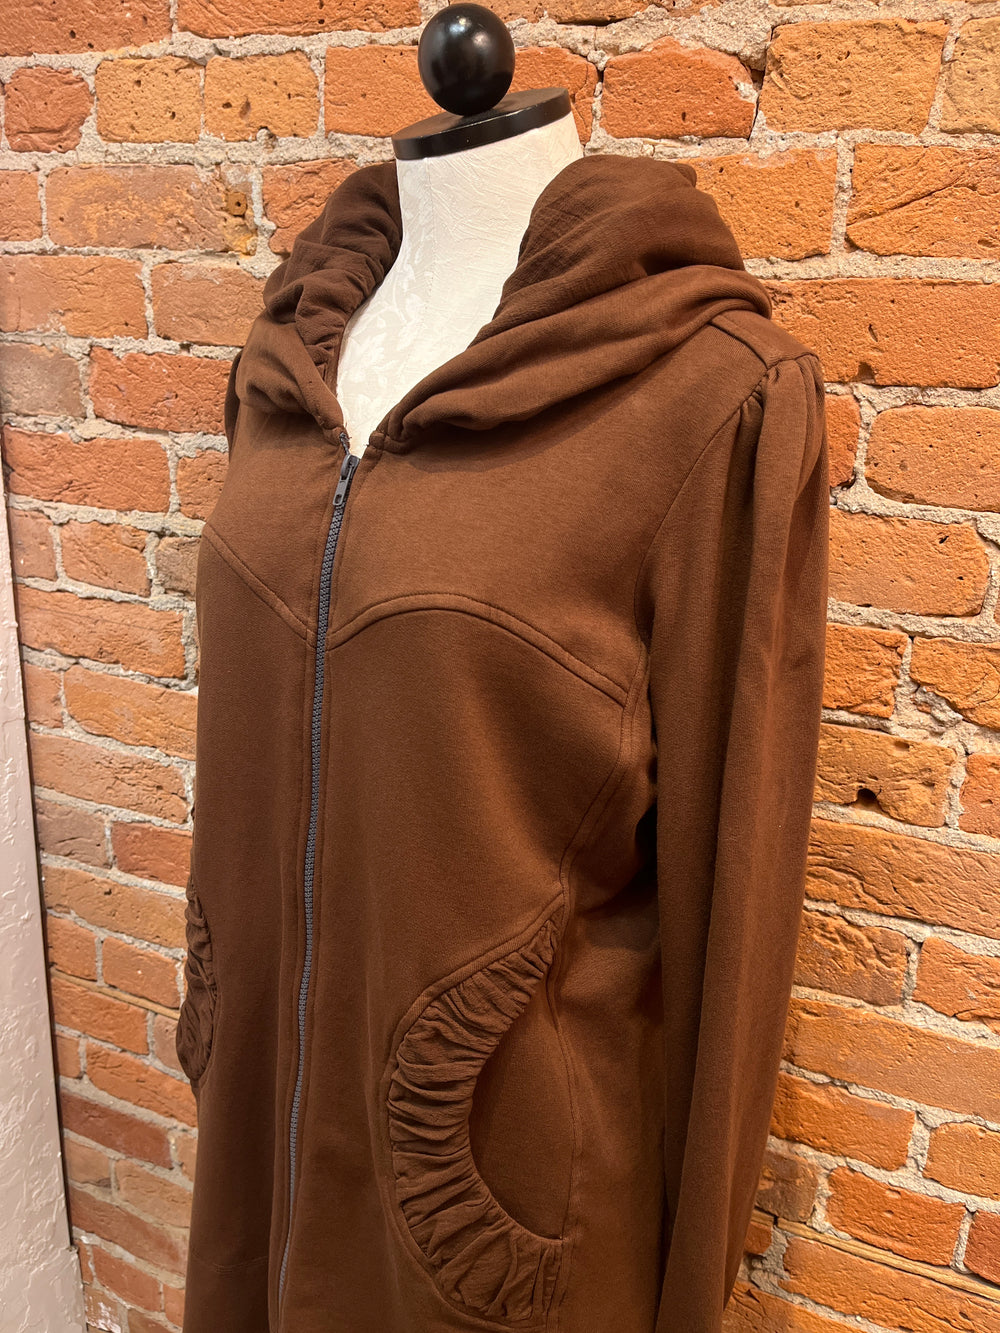 CMC hoodie jacket/coat 3187, long zip (8 colors)